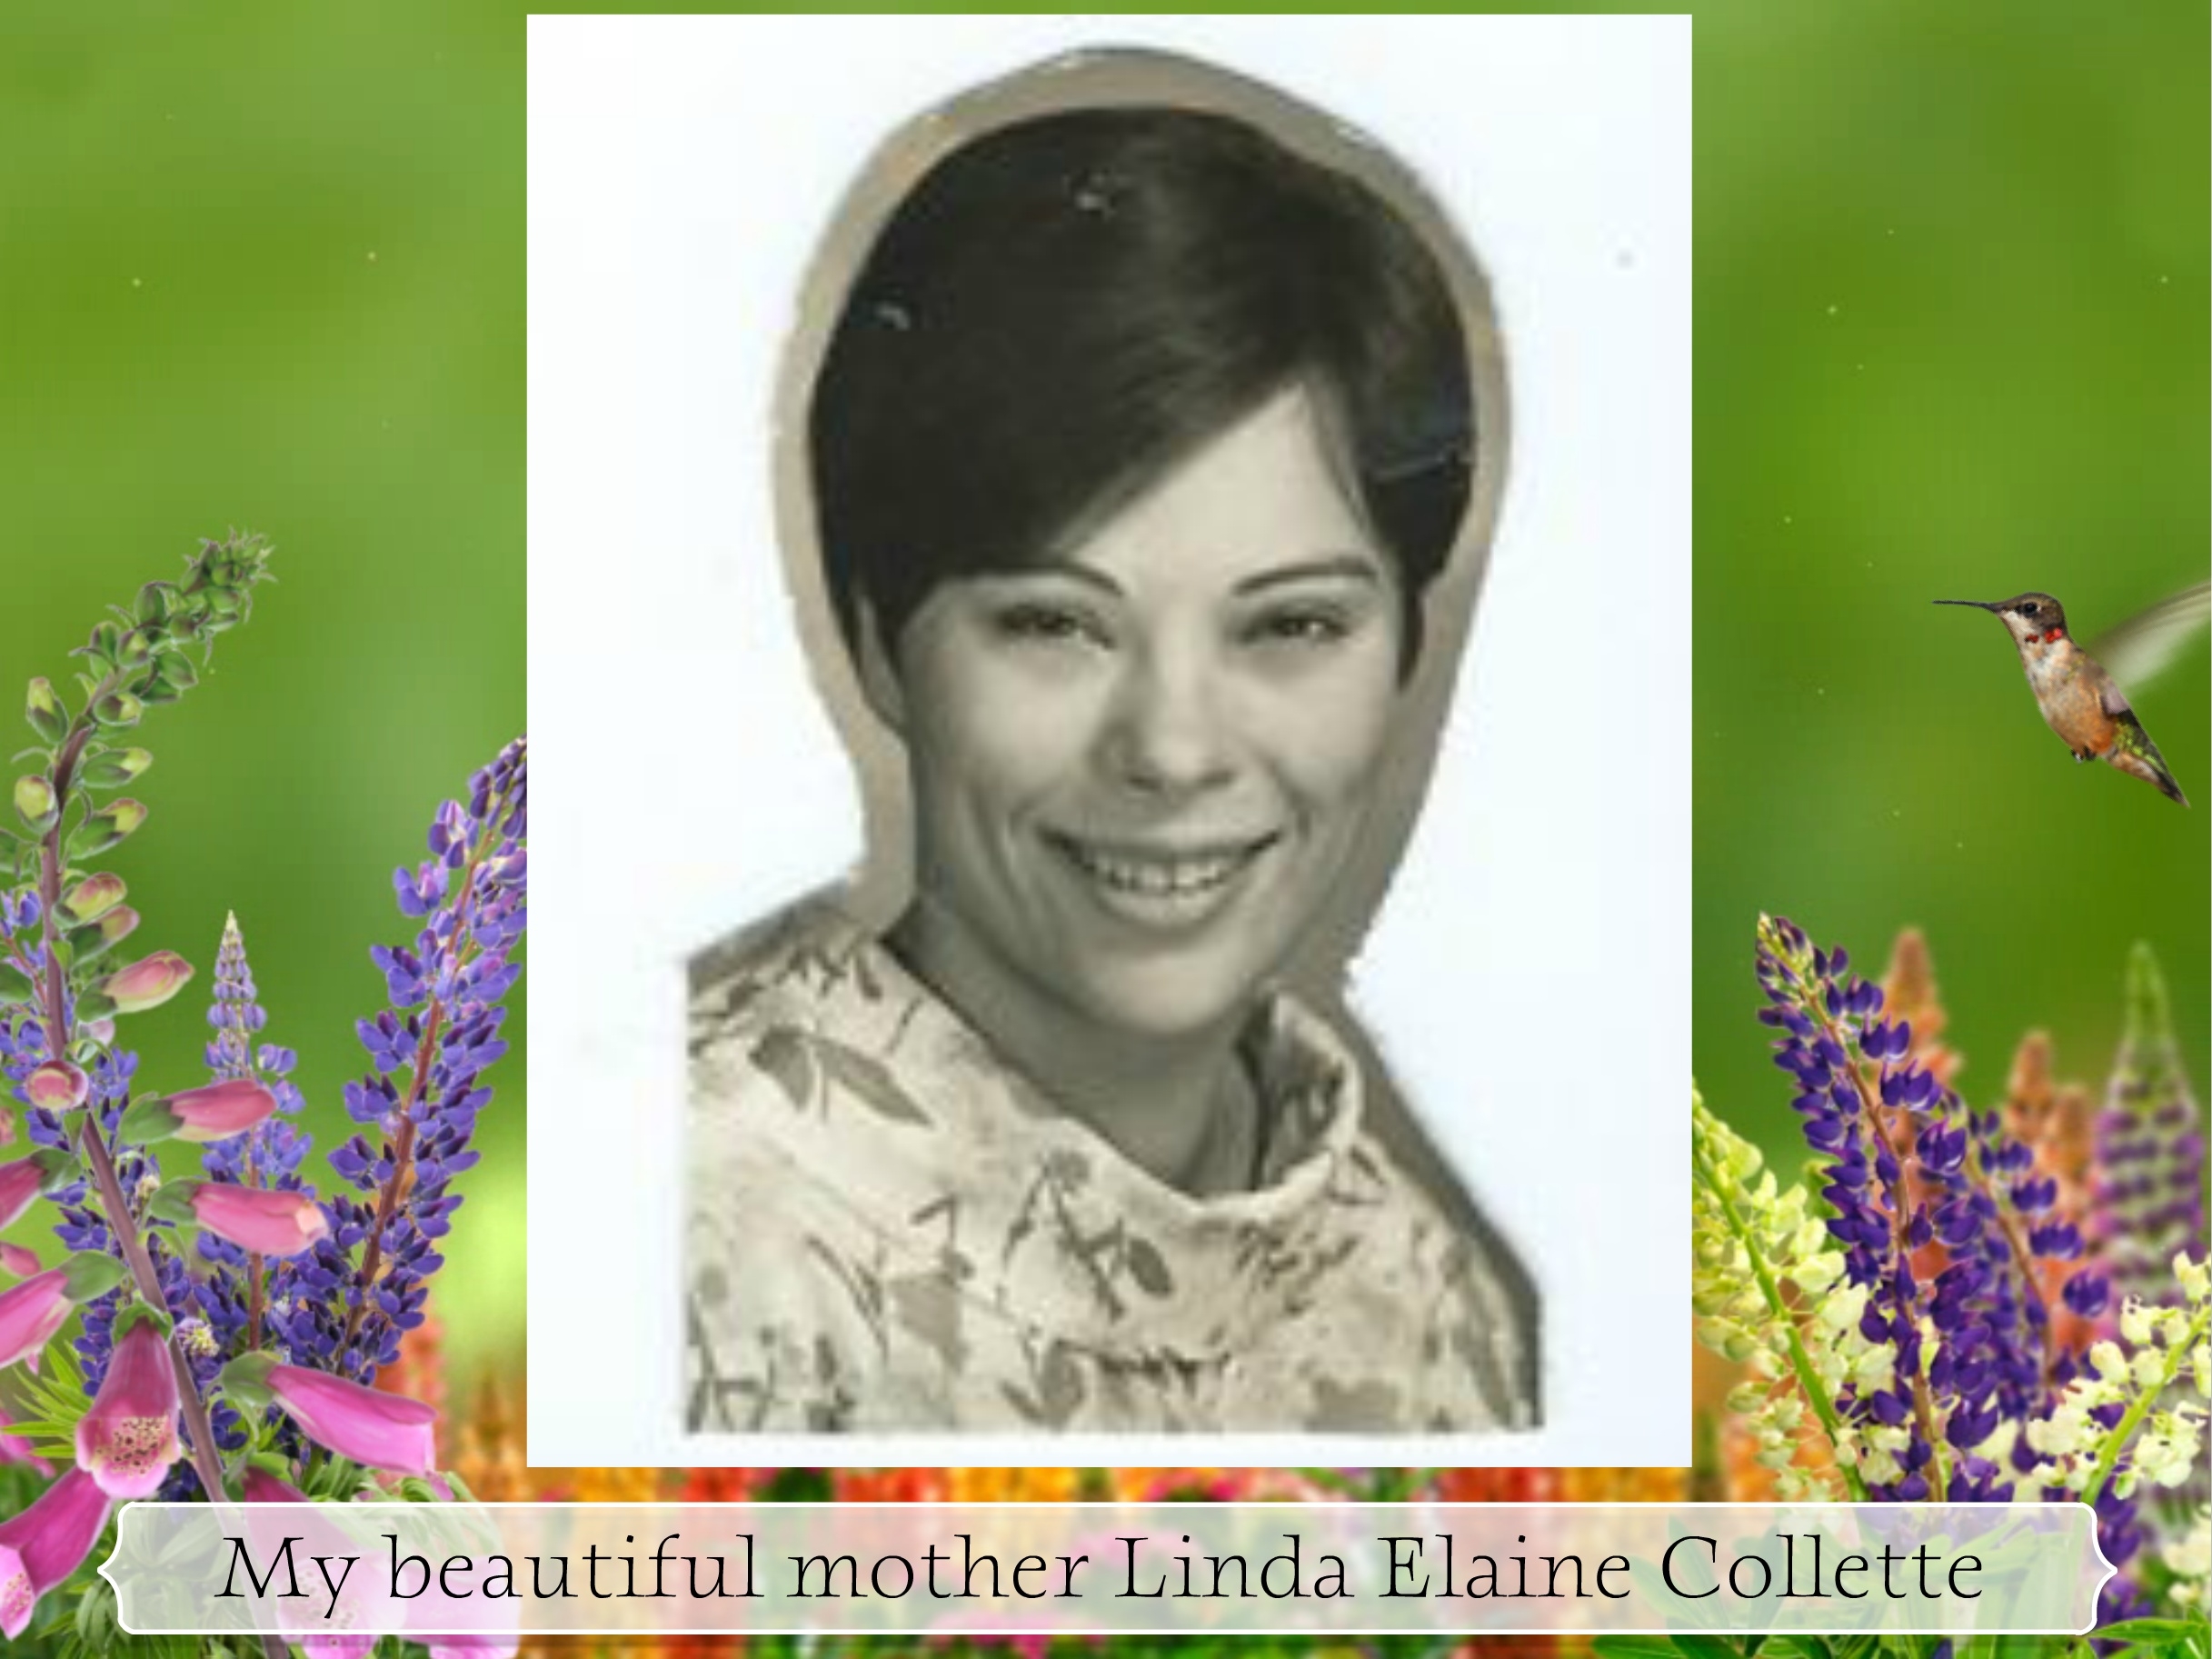 Linda Elaine Collette